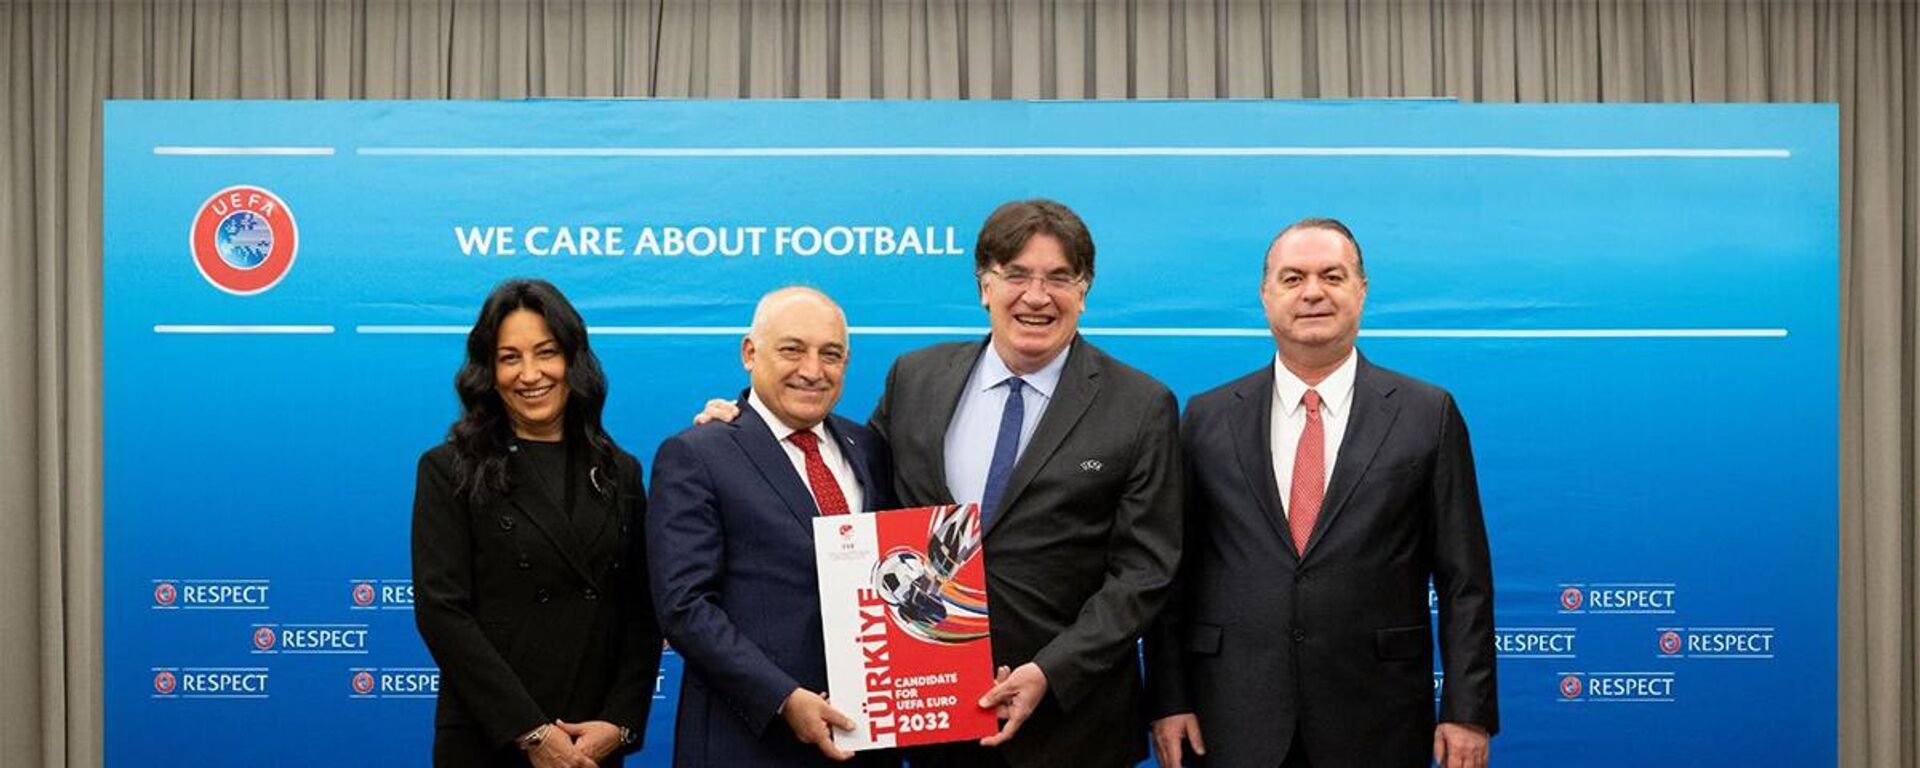 TFF, 2028 ve 2032 Avrupa Futbol Şampiyonalarına ev sahipliği yapmak için yaptığı resmi adaylık başvurusunun ardından adaylık dosyasını da UEFA’ya sundu. Gönderilen dosyada adaylık teklifinin detayları, hükumet garantileri gibi belgeler yer aldı. - Sputnik Türkiye, 1920, 12.04.2023